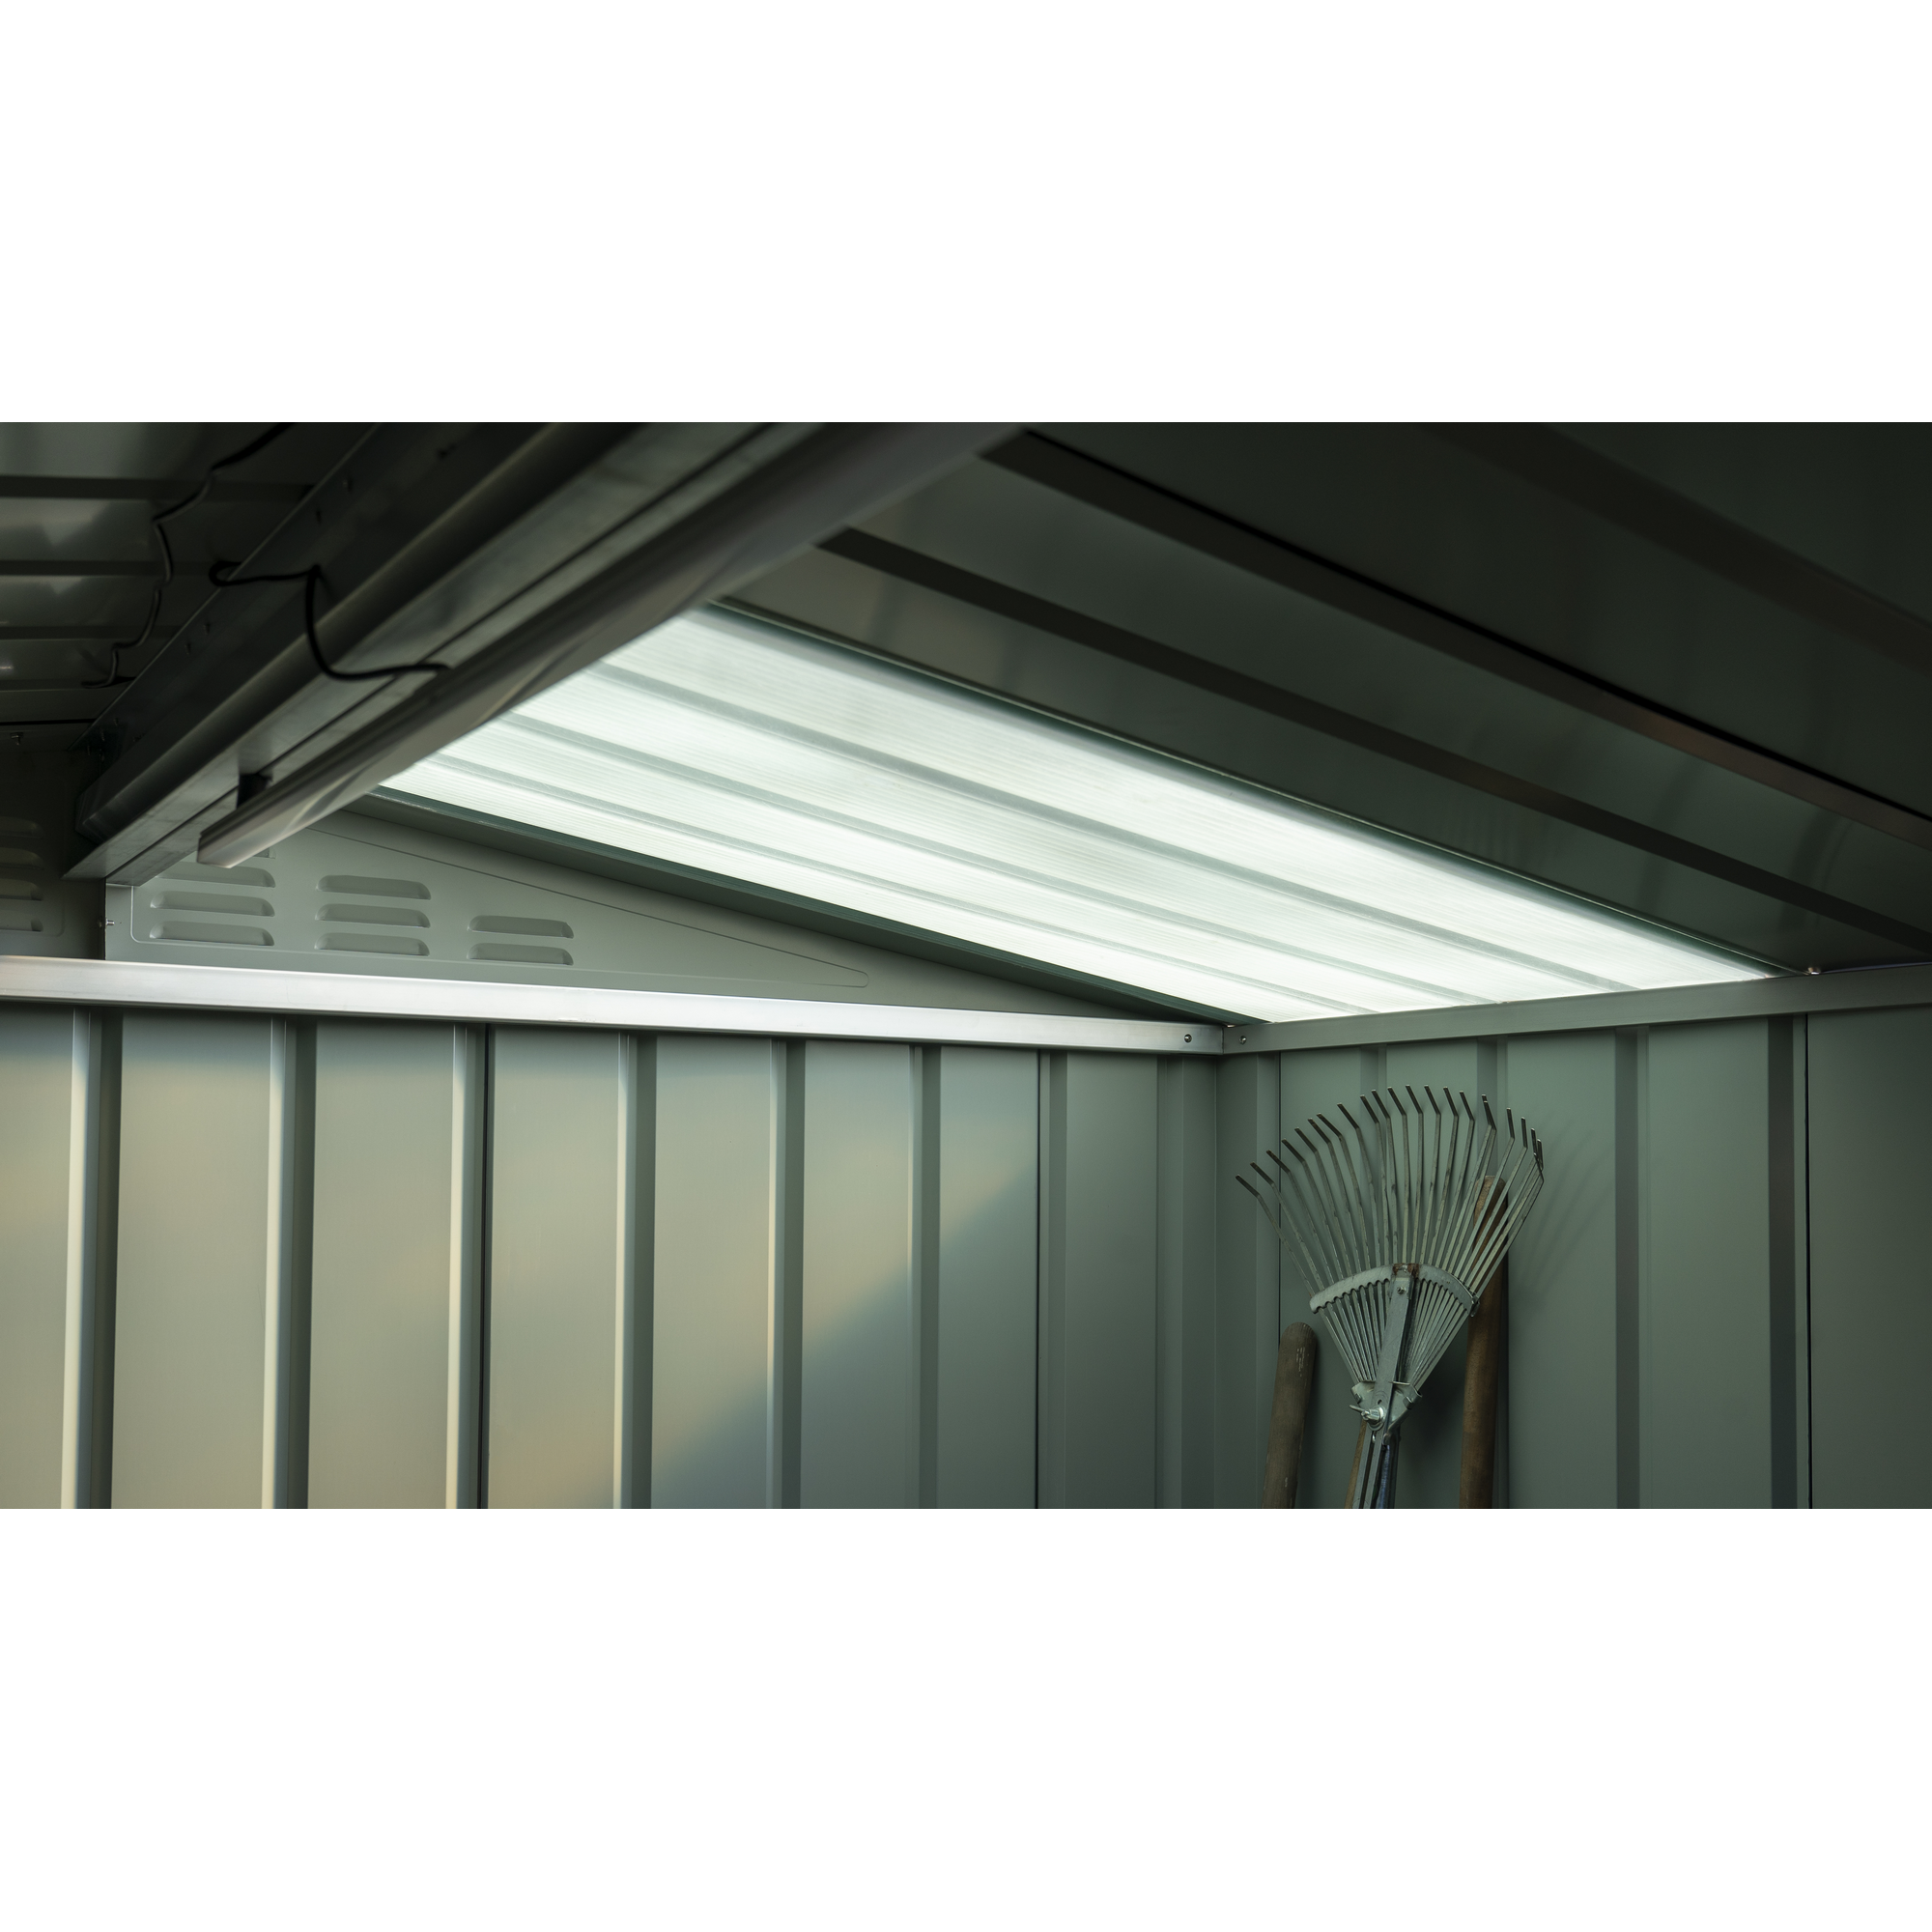 Dachpaneel 'Skylight 2' für Gerätehauser, 123 x 65,5 cm + product picture